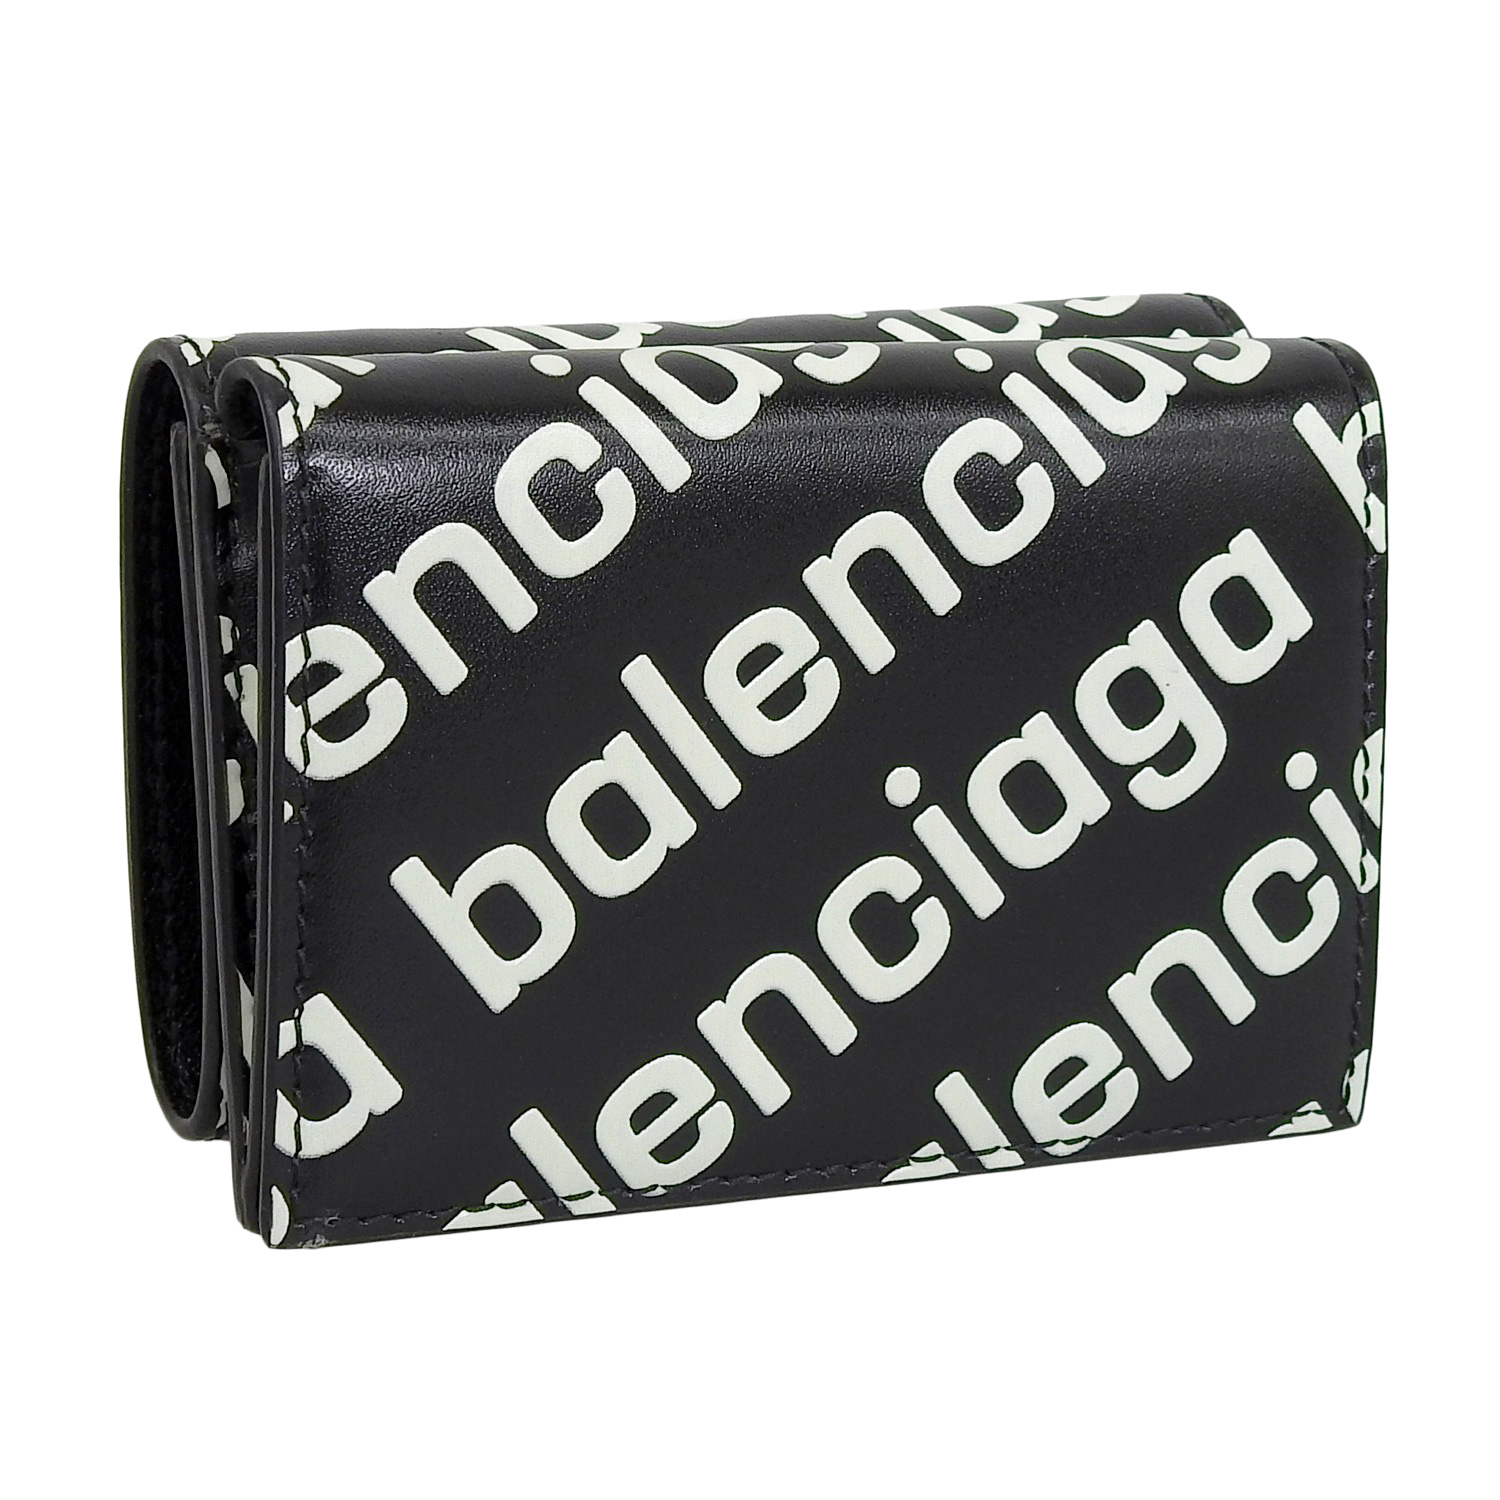 ブランド Balenciaga 三つ折り財布の通販 by emma's shop 